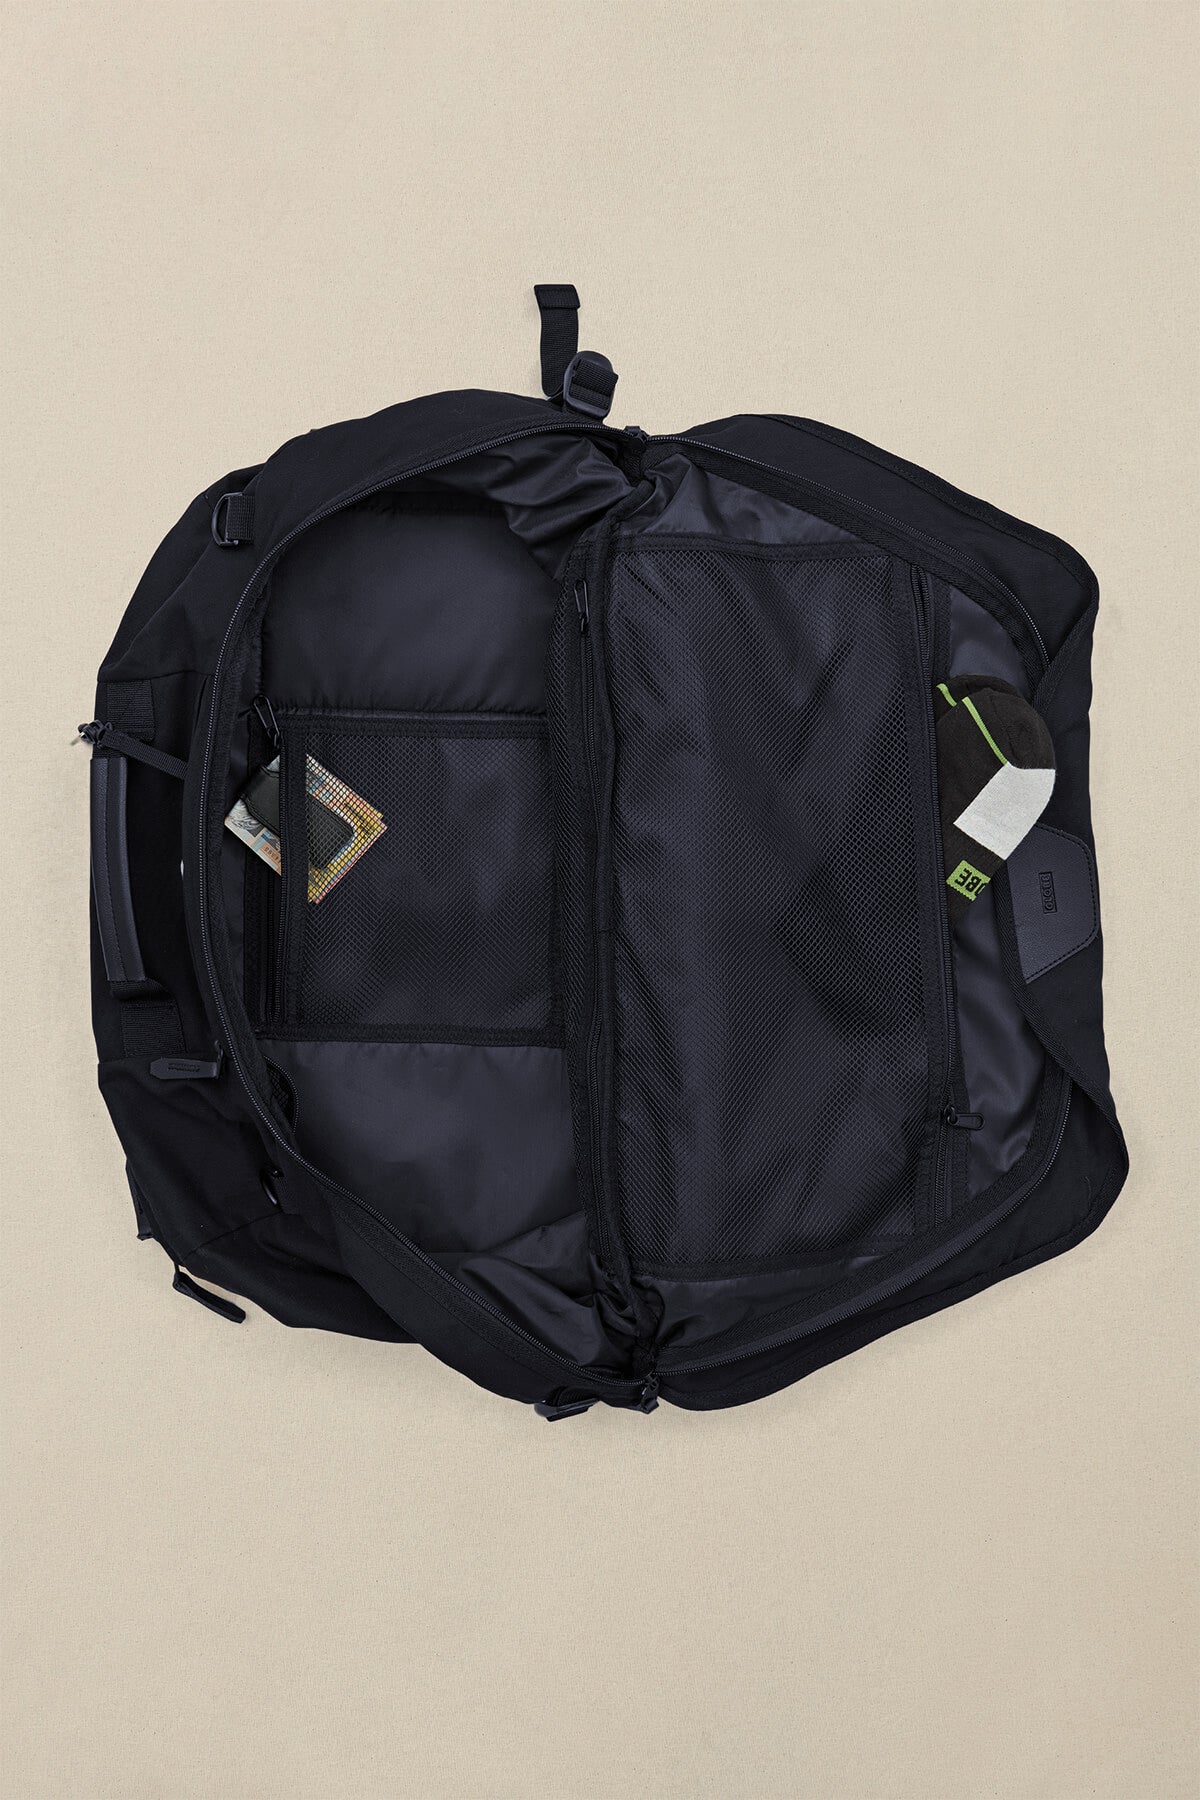 Globe BAGS Velocity 3 in 1 Travel Bag in Black